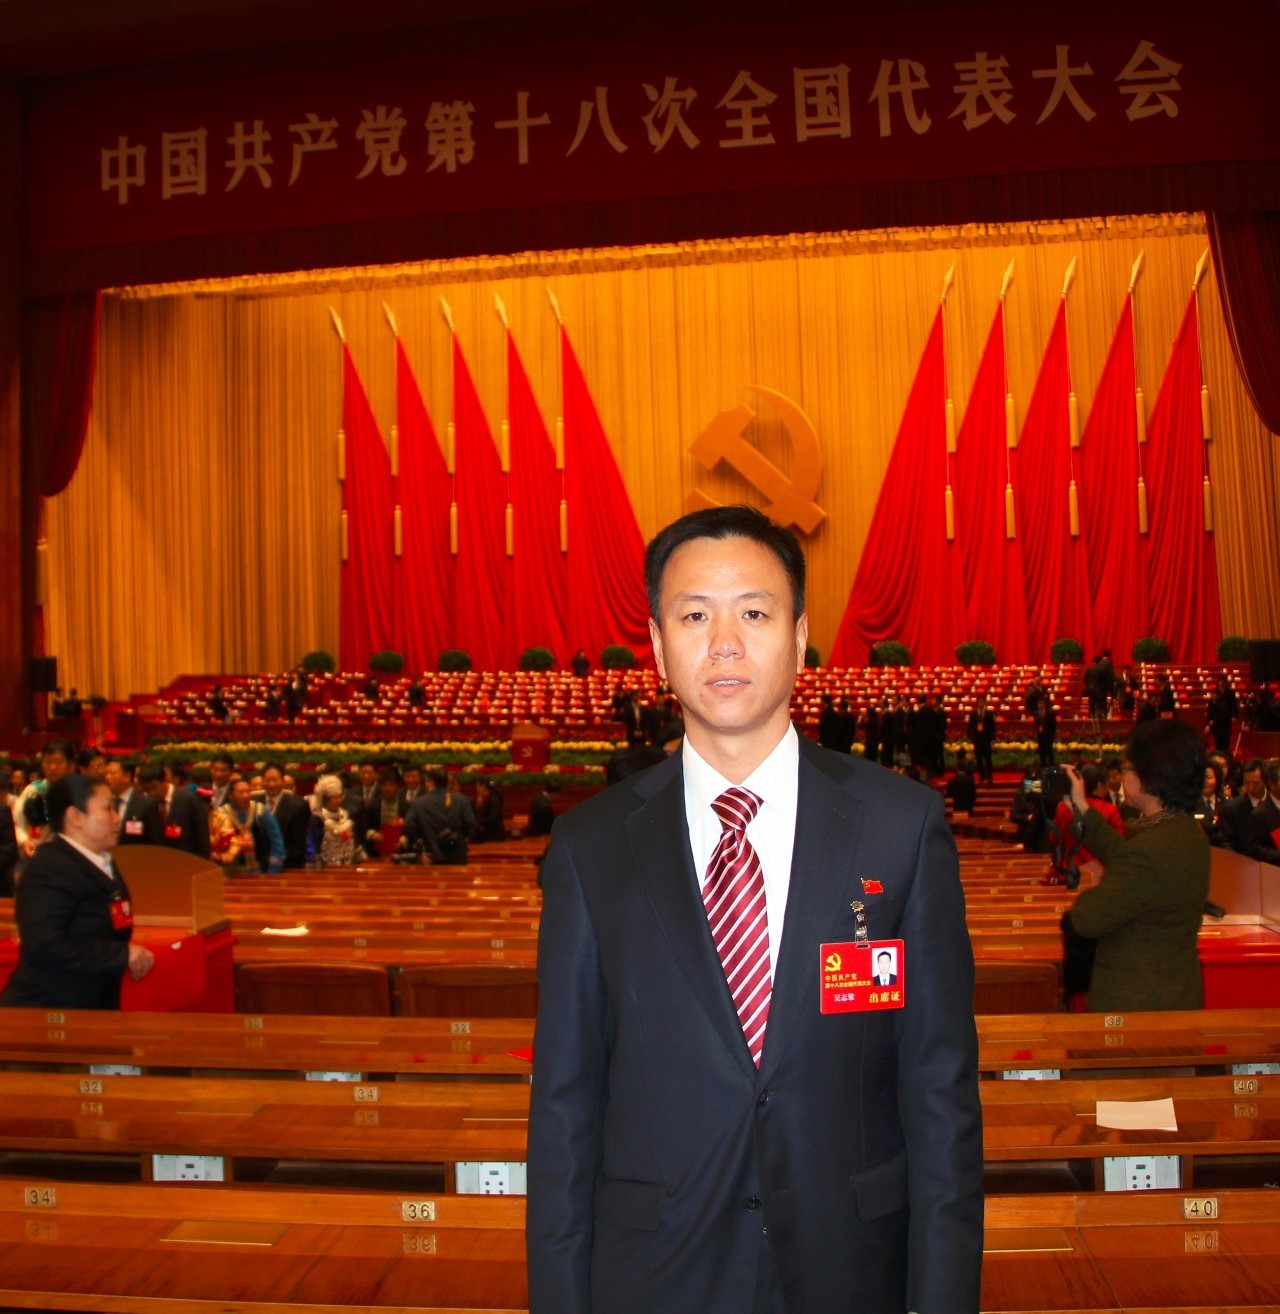 中国航油天津分公司纪委书记,1976年生人,先后荣获了"全国劳动模范","